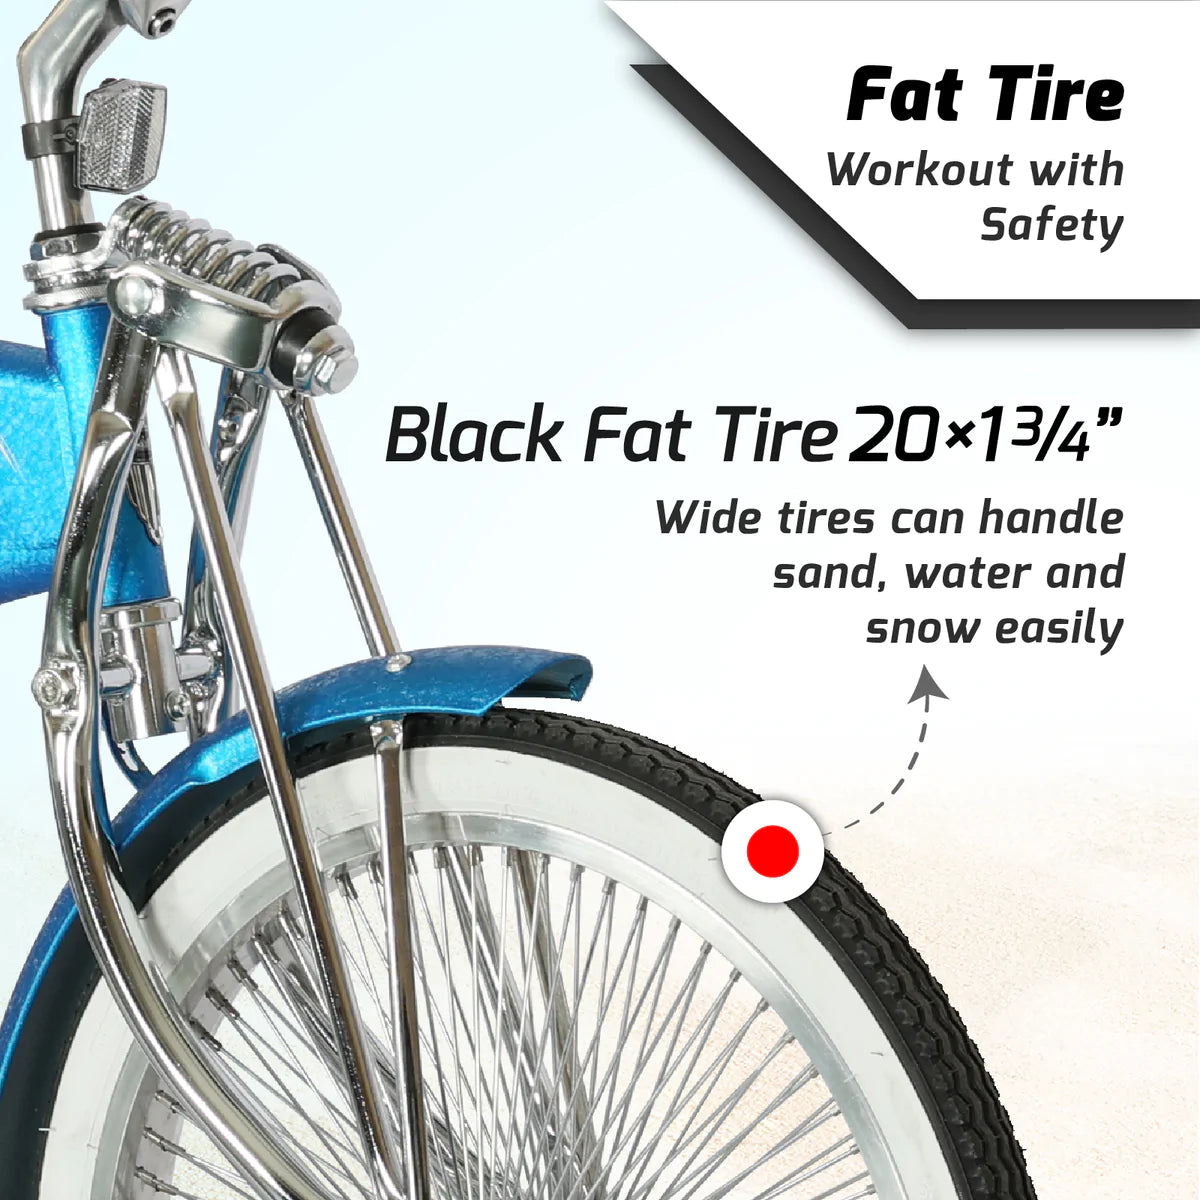 Tracer Hyena Classic Beach Cruiser Bike - Wrinkle Blue | Fat Tire Bike | Cruiser Fat Tire Bike | Stretch Bike | Fat Tire | Bike Lover USA